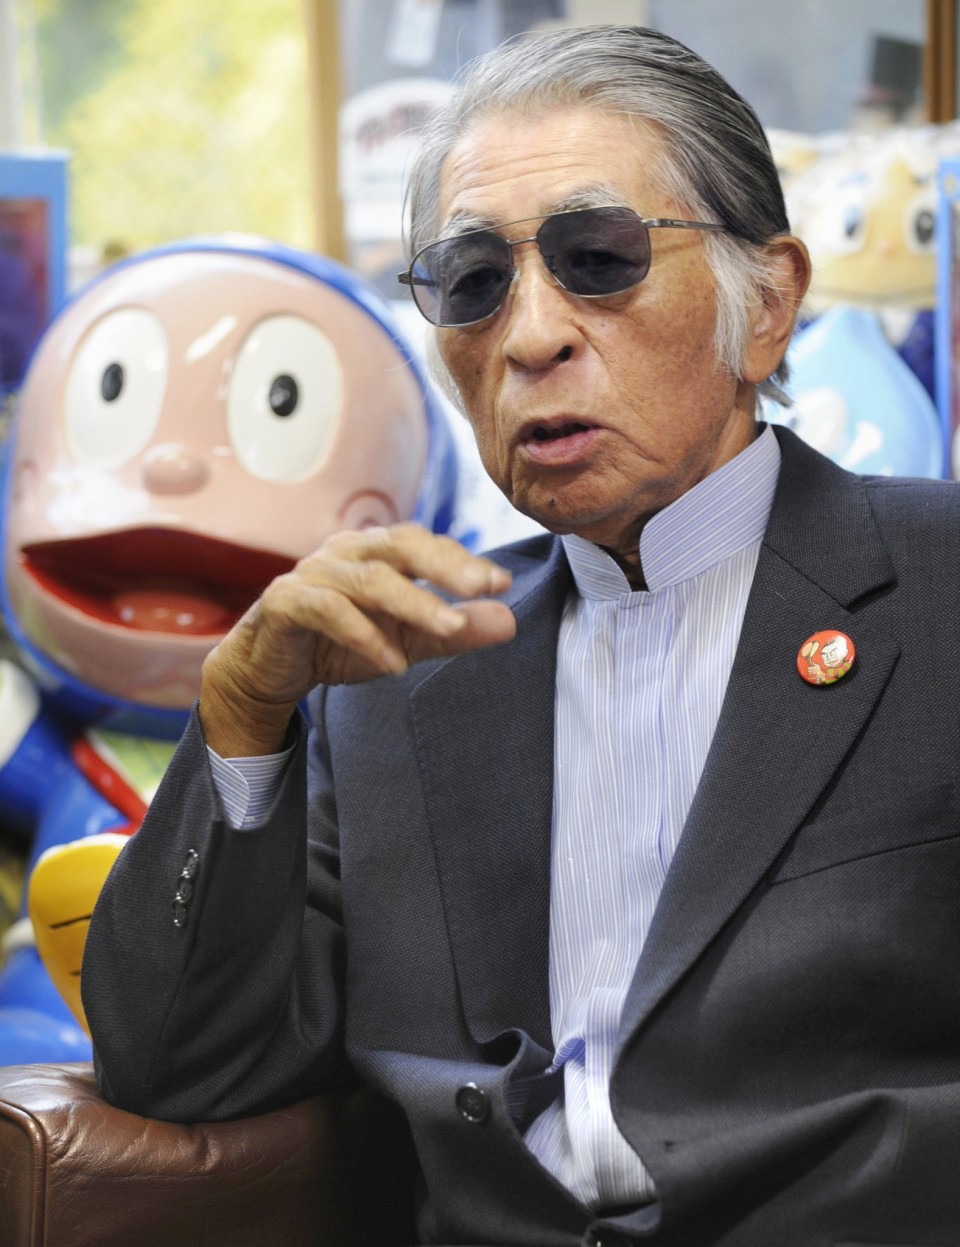 Hiroshi Fujimoto: Hiroshi Fujimoto - một trong những tên tuổi lớn trong lịch sử manga Nhật Bản. Những tác phẩm của ông đã góp phần không nhỏ vào sự phát triển và lan rộng của nền văn hóa manga trên toàn thế giới. Hãy khám phá những tác phẩm đầy sáng tạo của Hiroshi Fujimoto và cùng tìm hiểu về cuộc đời của ông.